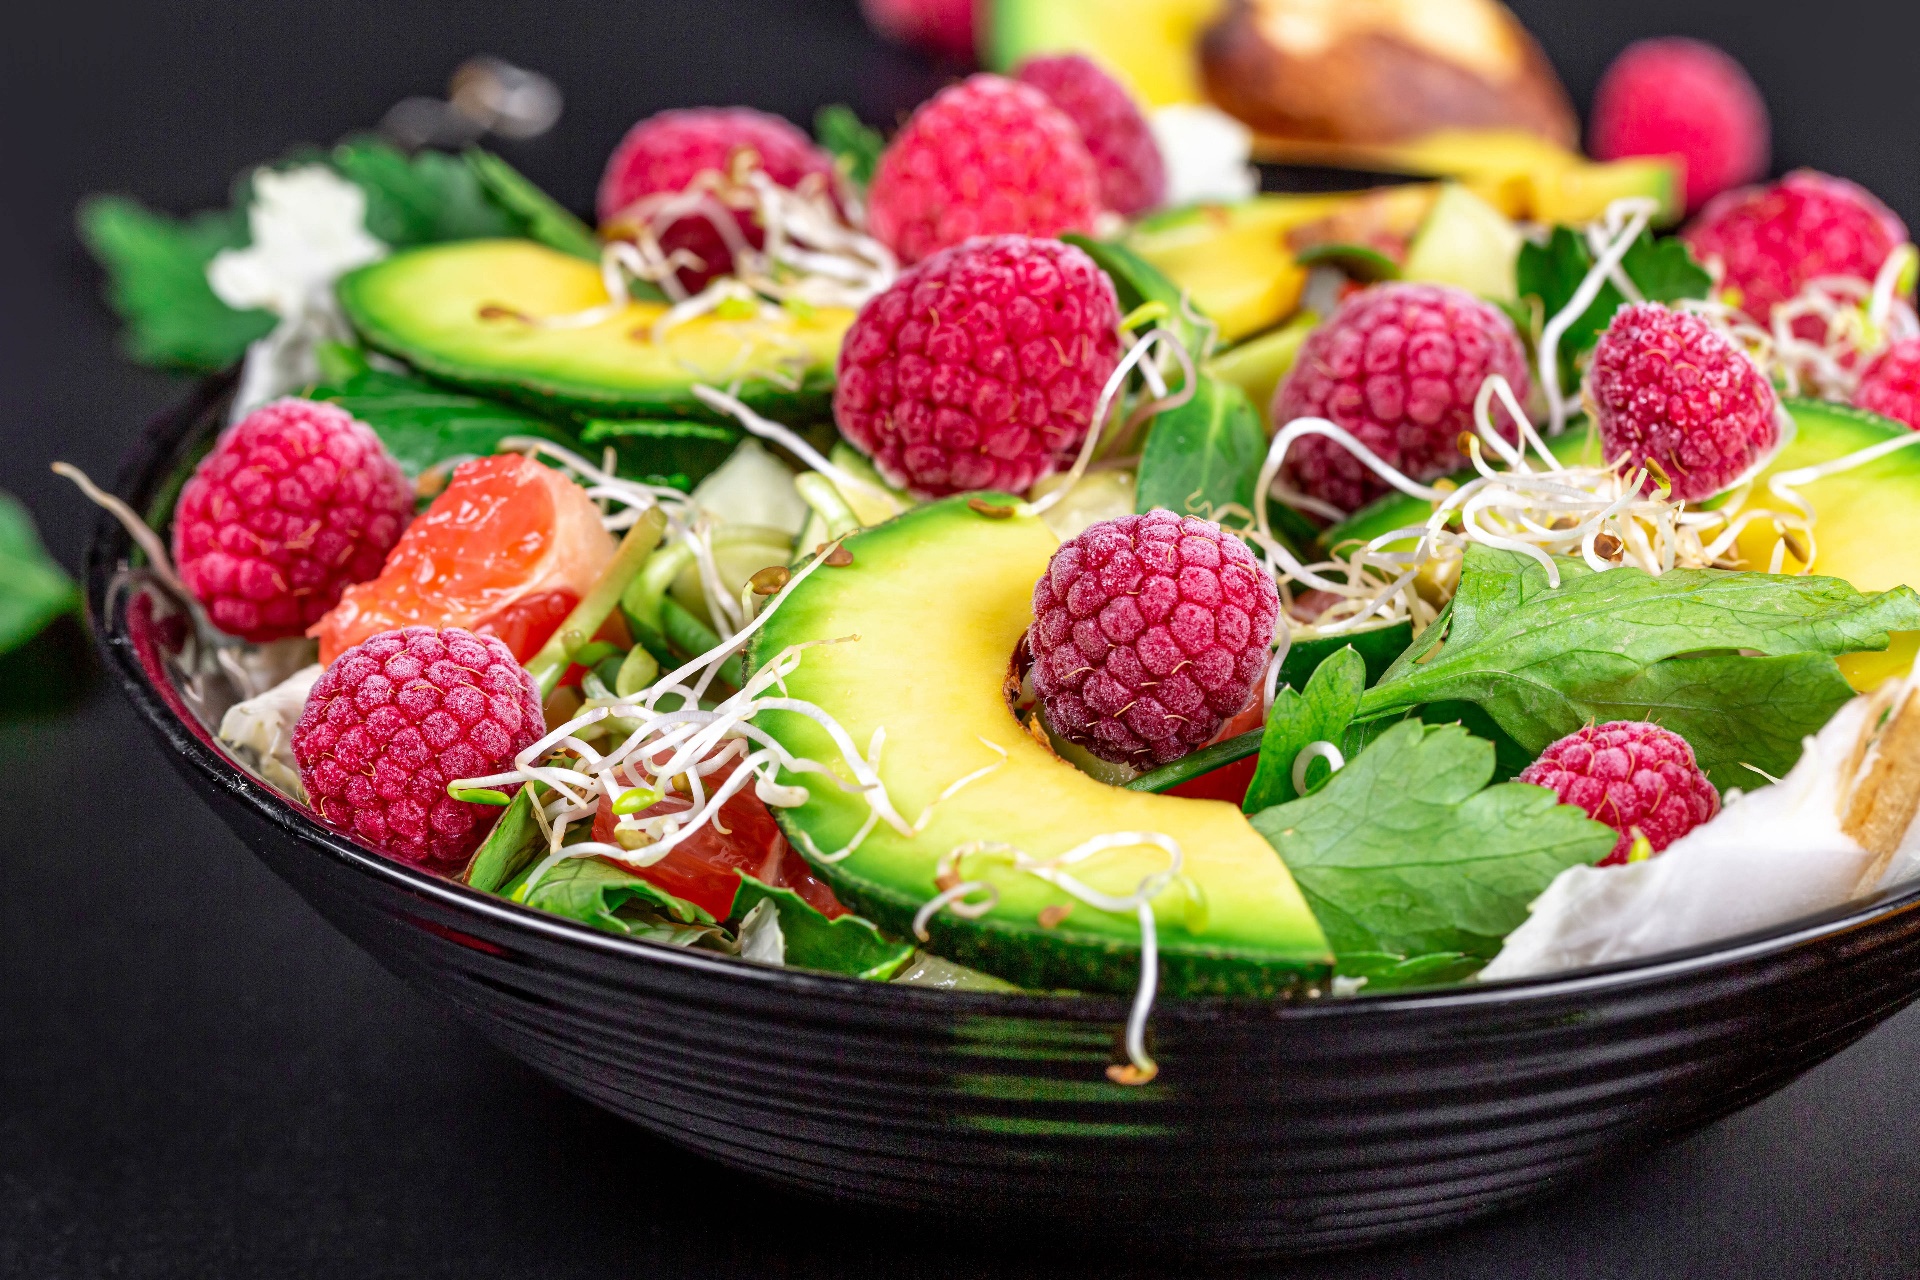 General 1920x1280 salad fruit colorful food berries raspberries avocados simple background